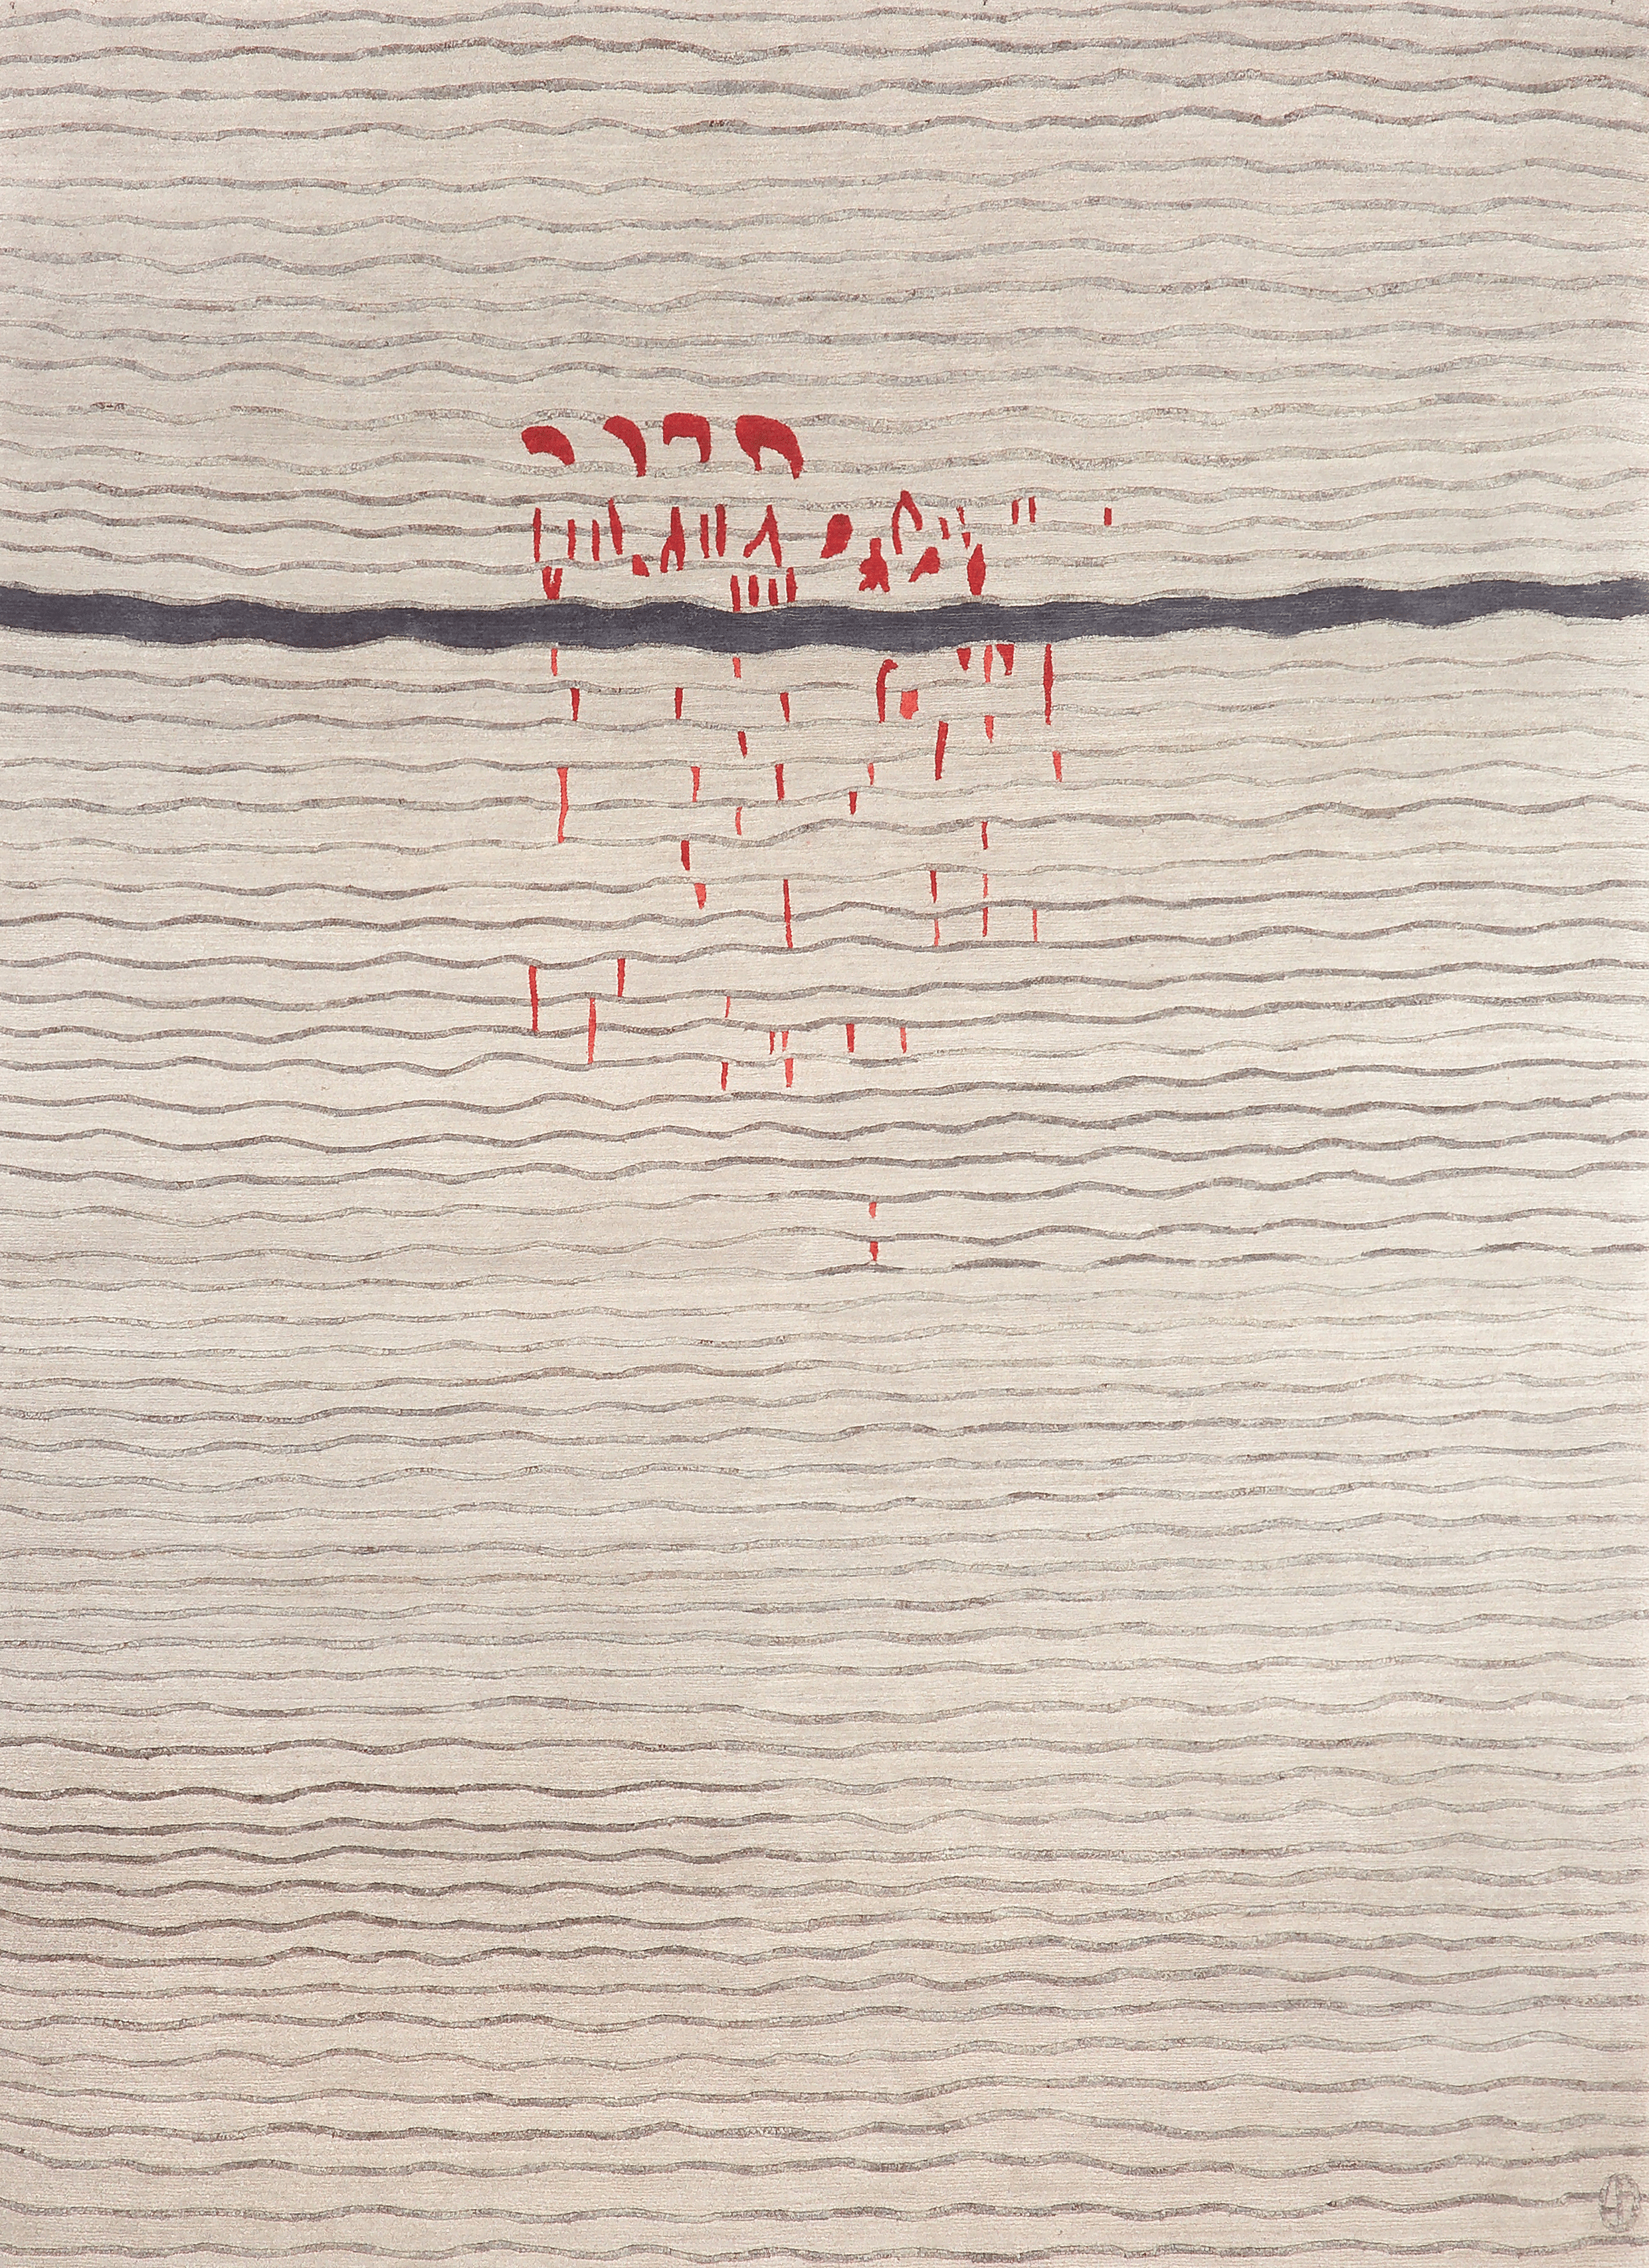 Geba Teppich "Babchu" in hellbeige mit gewellten horizontalen grauen Linien, eine dicke graue Linien in der oberen Hälfte mit roten Flecken in der Mitte, aus Nepal, 100 Koten, gefertigt aus tibetischer Hochlandschafwolle - Produktbild - Geba Teppich